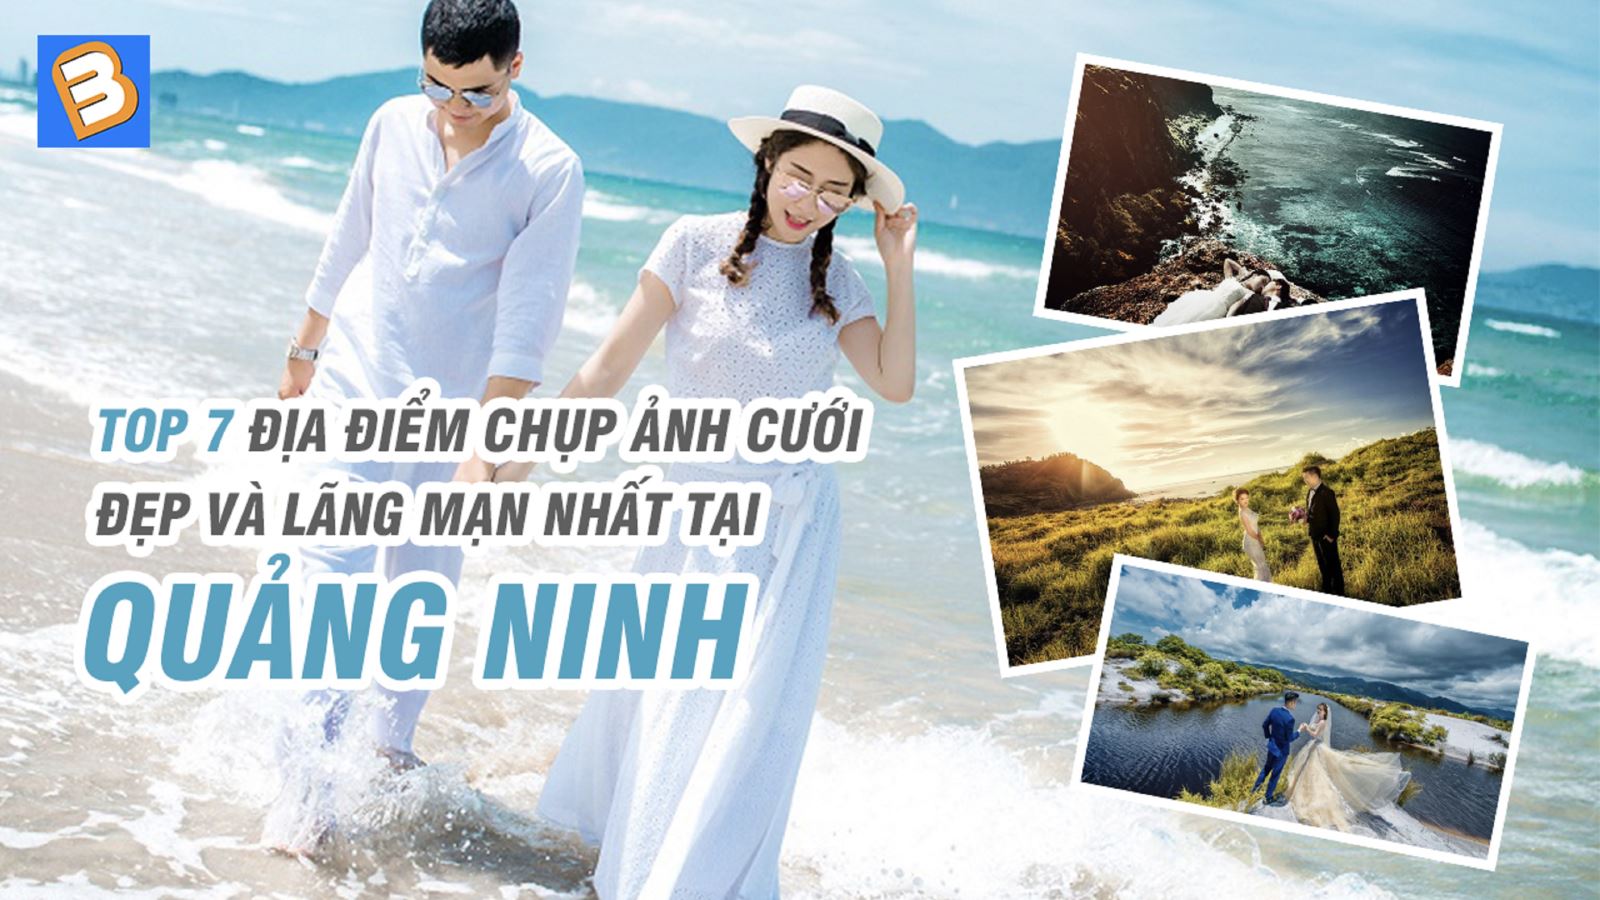 Top 7 địa điểm chụp ảnh cưới đẹp và lãng mạn nhất tại Quảng Ninh